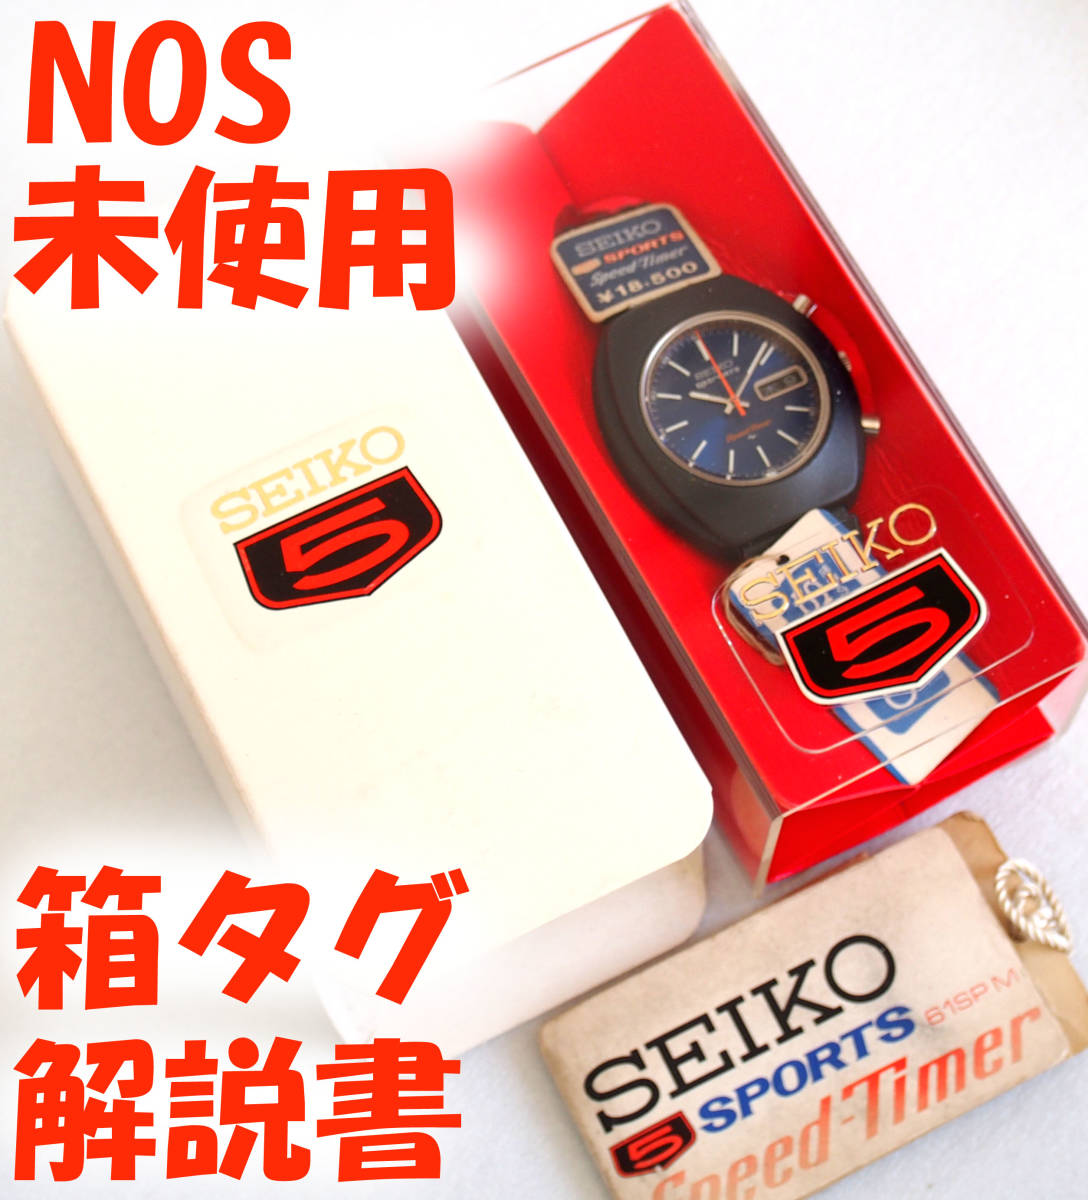 未使用 SEIKO5 Sports Speed Timer 箱 解説書 タグ NOS 7017-7000 セイコー5 スポーツ スピードタイマー 1970年代 機械式自動巻き 腕時計